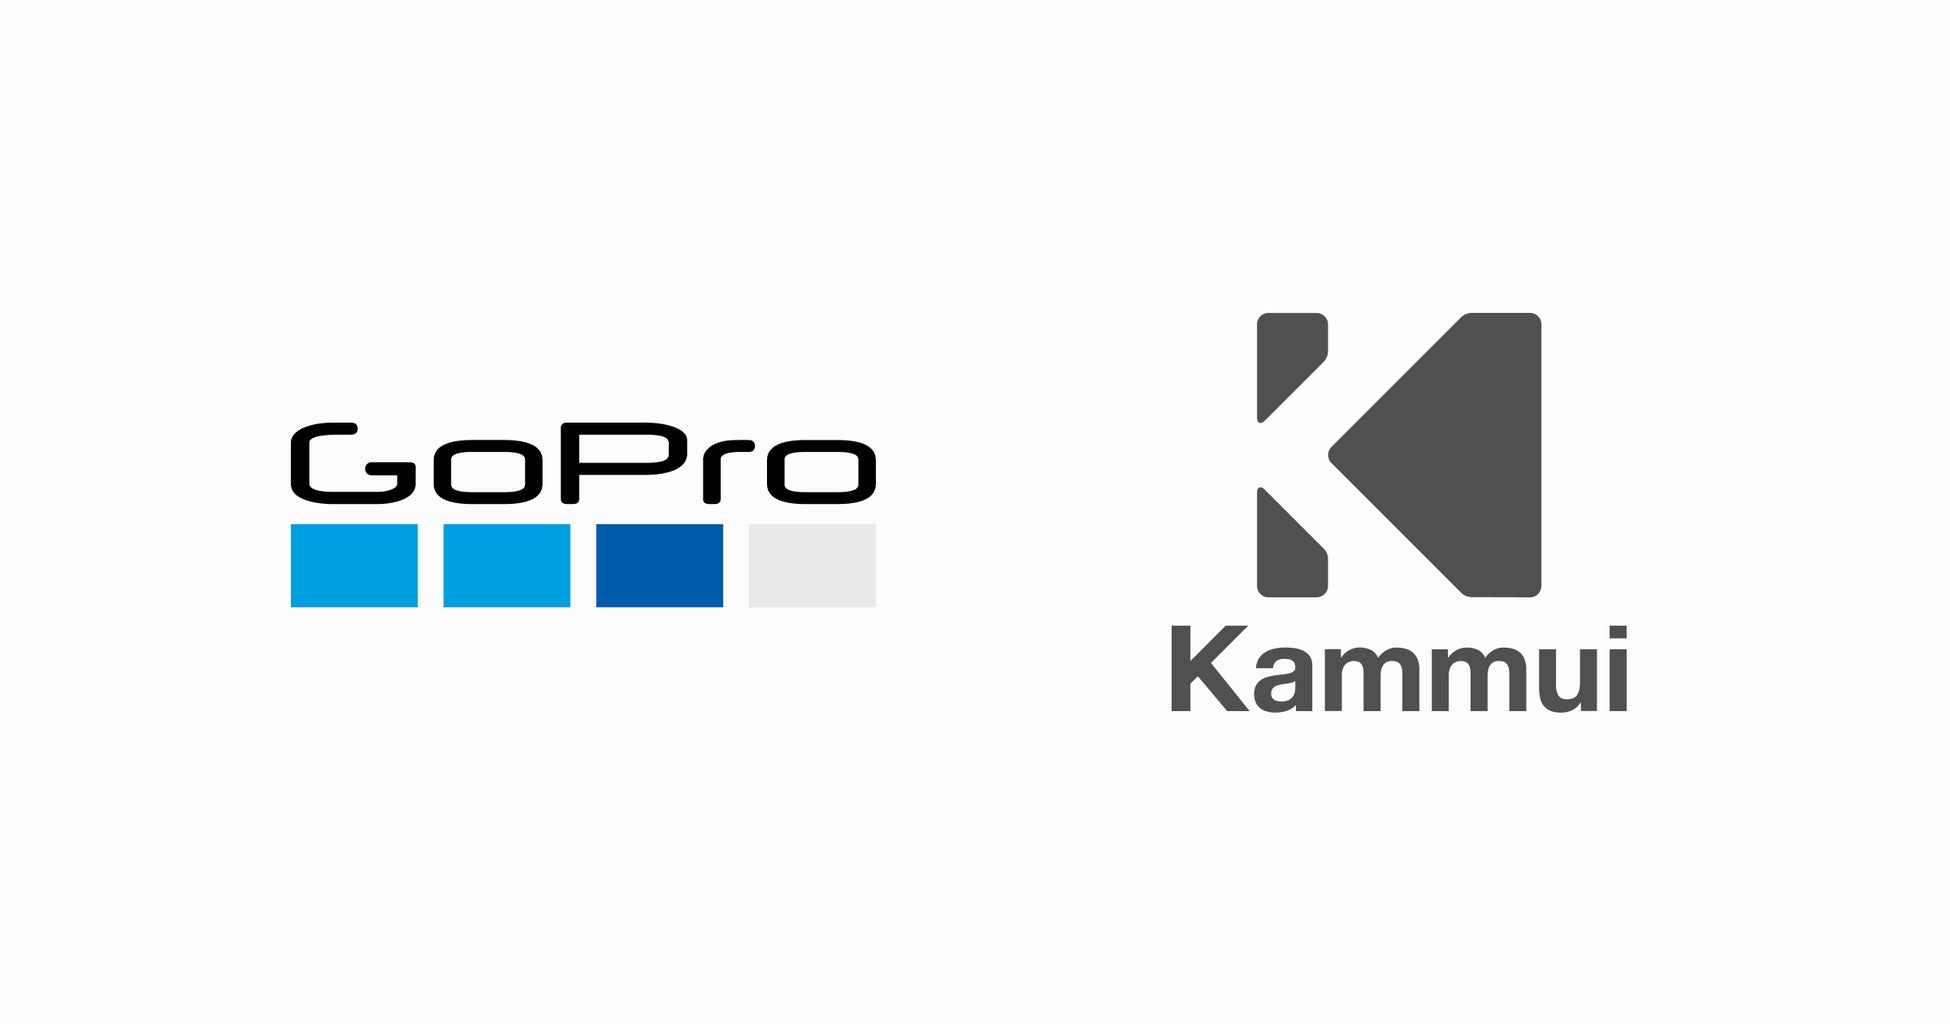 株式会社KAMMUIとGoPro, Inc.による「自然体験の重要性を共有・発信すること」に関する協業のお知らせ